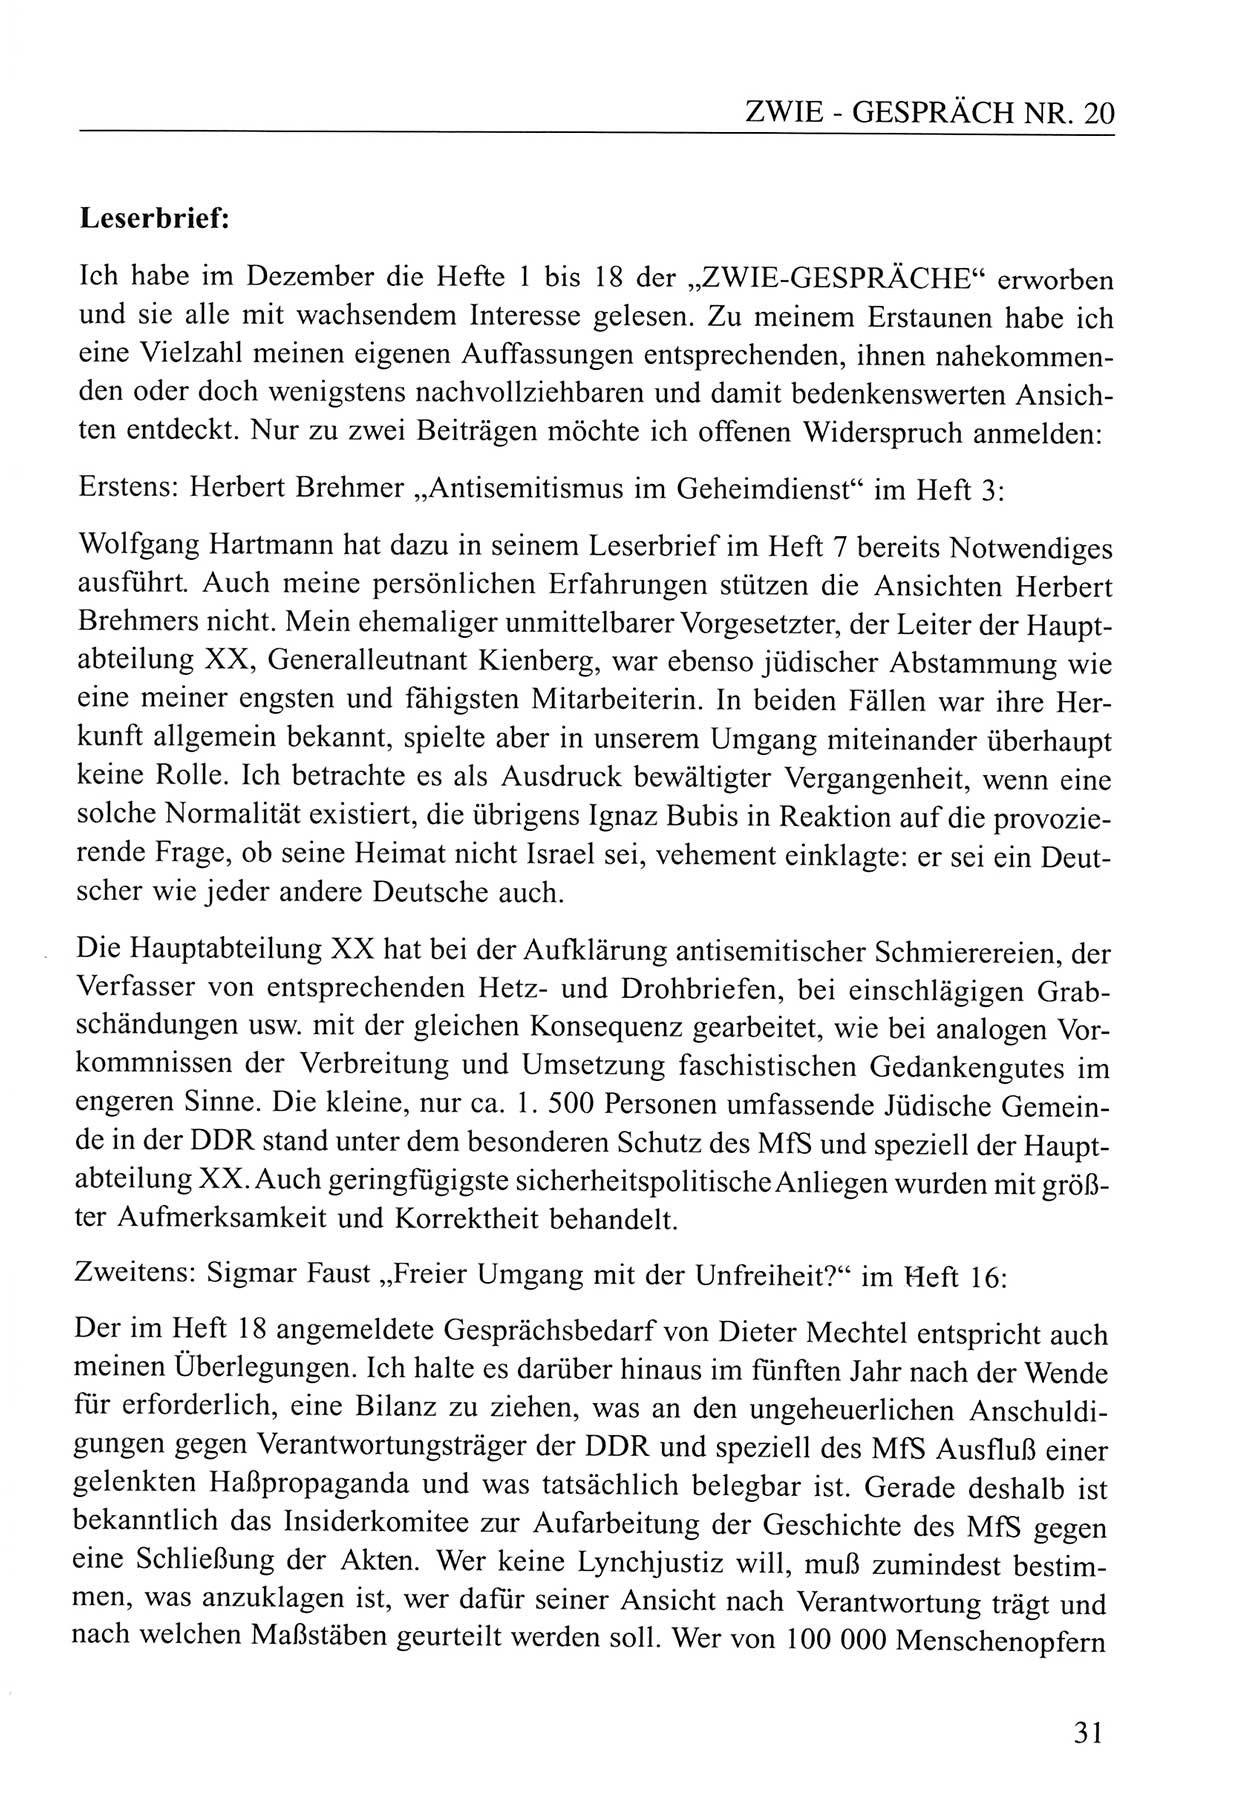 Zwie-Gespräch, Beiträge zum Umgang mit der Staatssicherheits-Vergangenheit [Deutsche Demokratische Republik (DDR)], Ausgabe Nr. 20, Berlin 1994, Seite 31 (Zwie-Gespr. Ausg. 20 1994, S. 31)